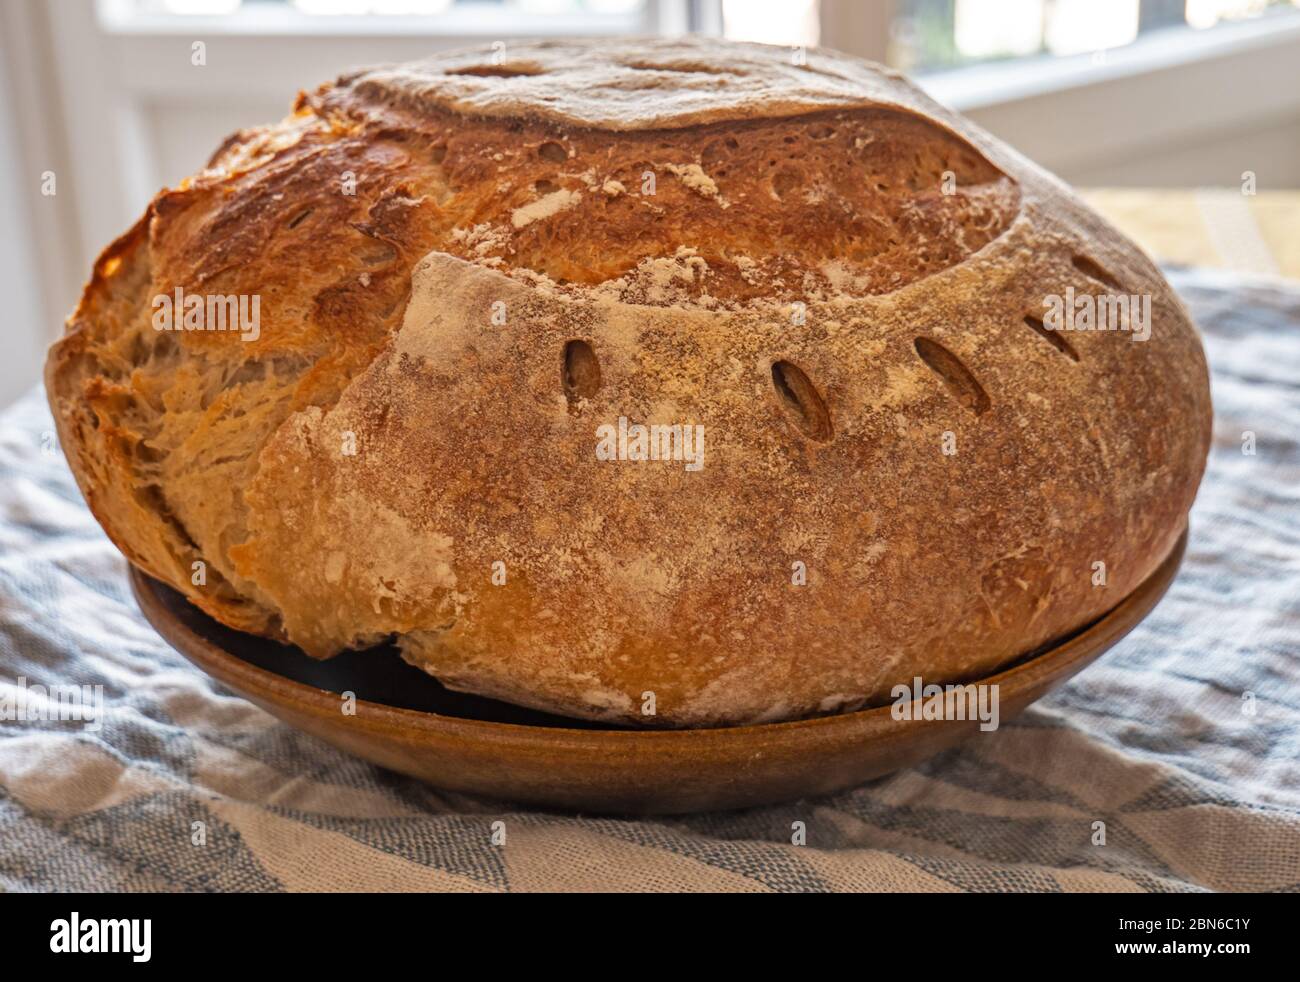 Pain Sourdough fraîchement préparé. Le pain de levain fraîchement préparé est installé sur une table recouverte de tissu dans une cuisine rustique. Le pain a une croûte dorée dehors. Banque D'Images